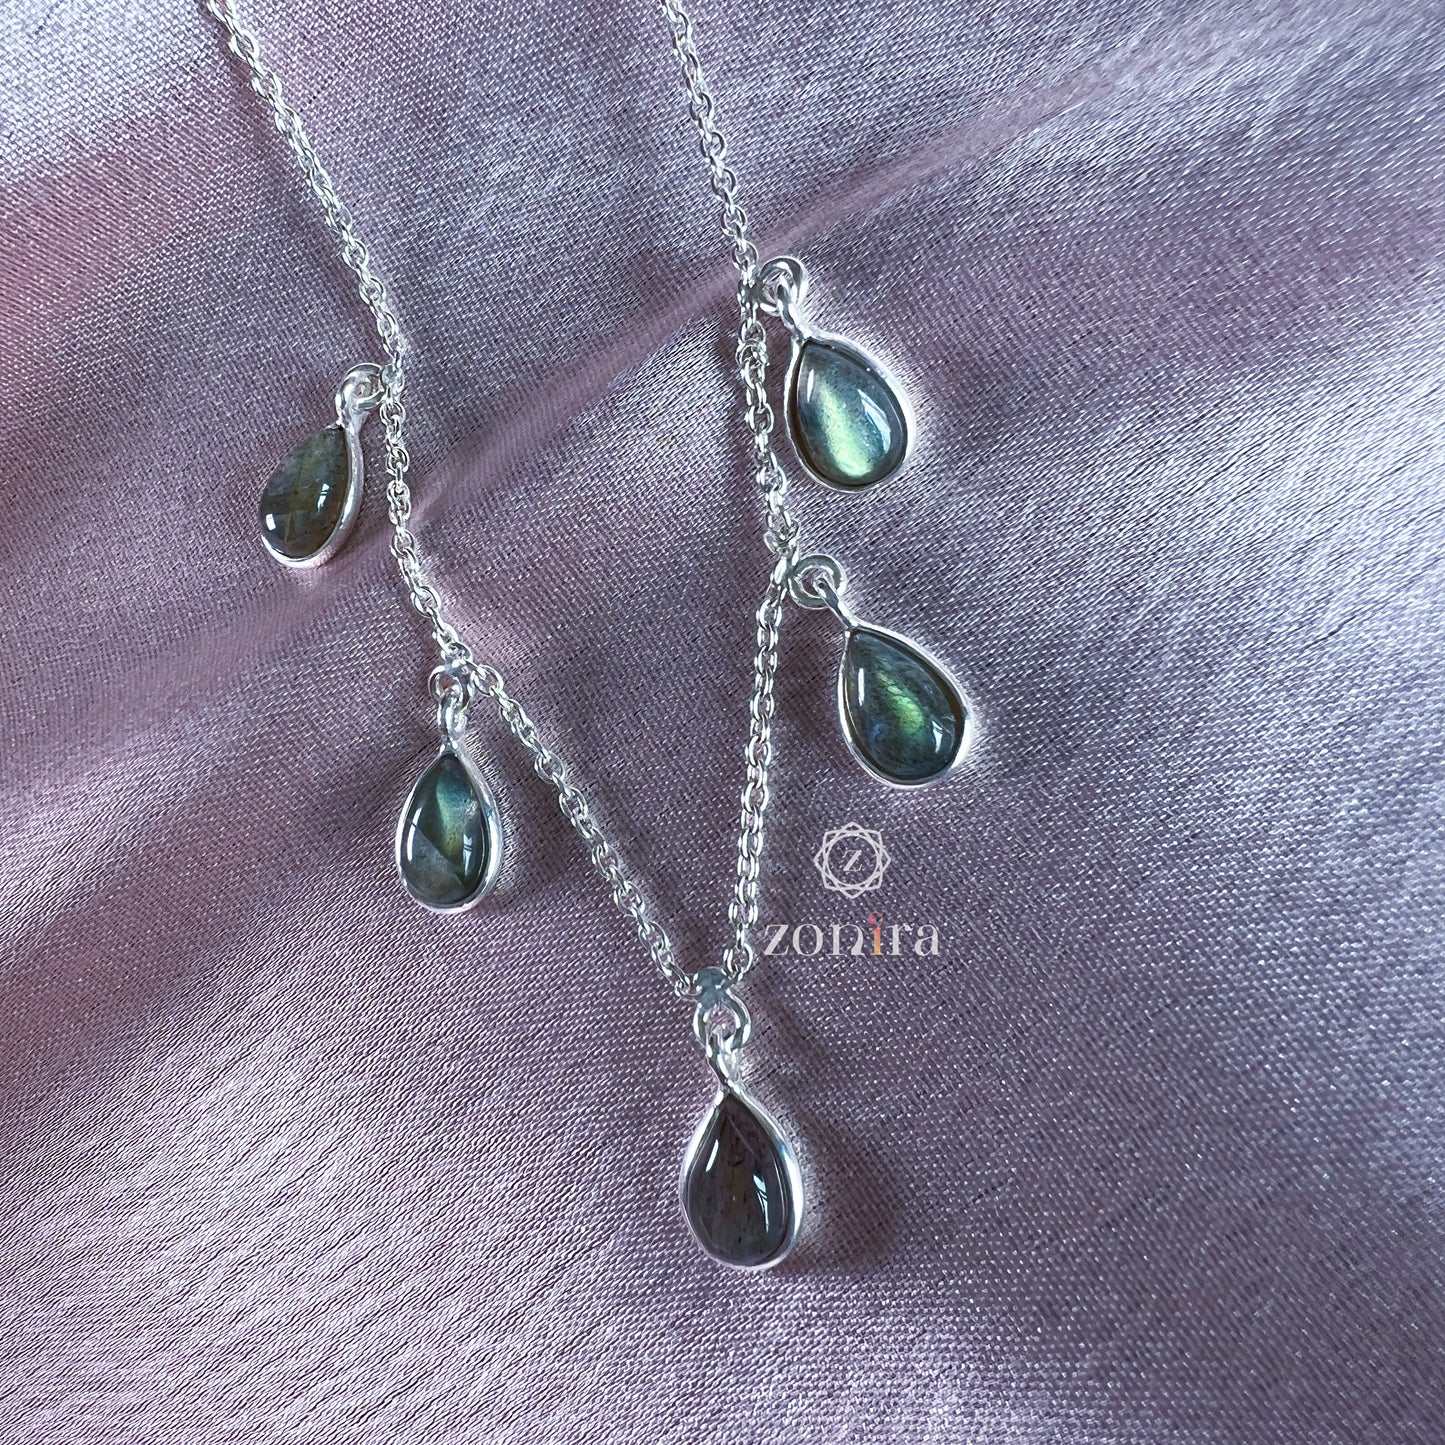 Ecstacy Silver Necklace - Labradorite Princess